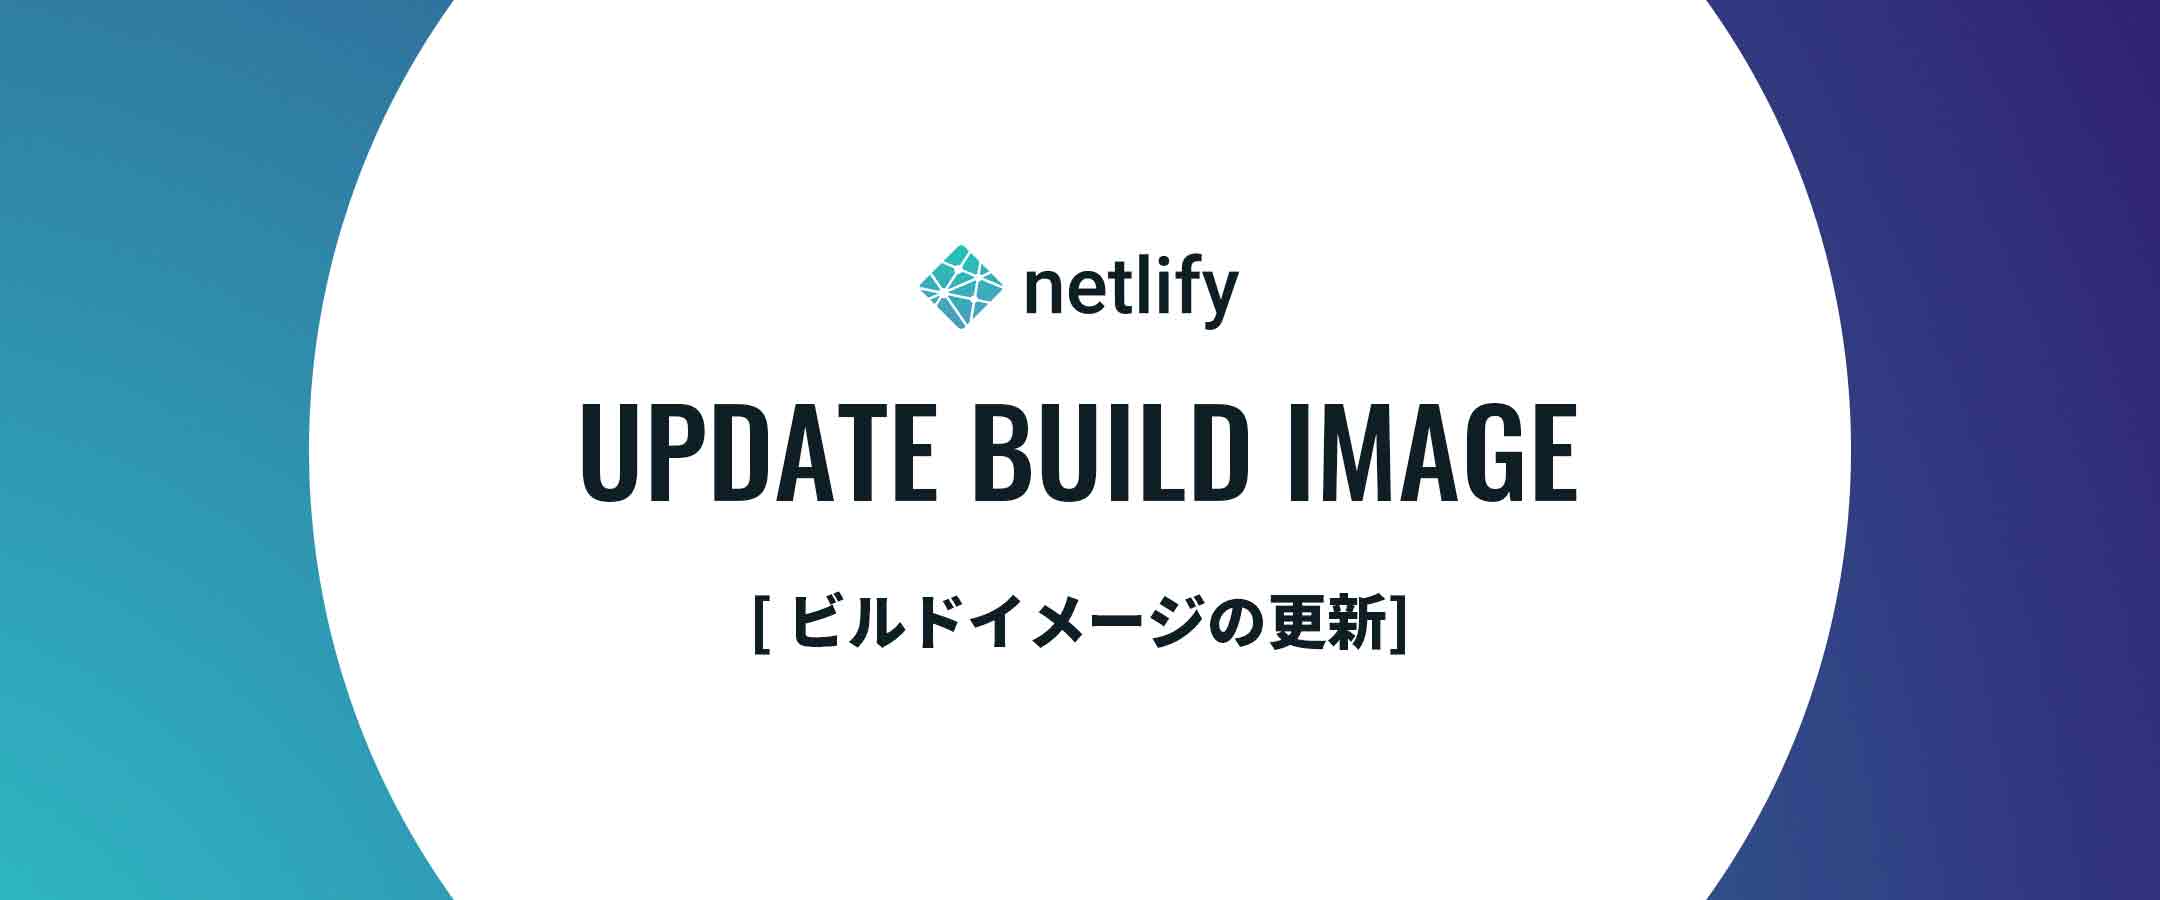 【netlify】ビルドイメージを更新 [ Ubuntu Xenial 16.04 → Ubuntu Focal 20.04 ]